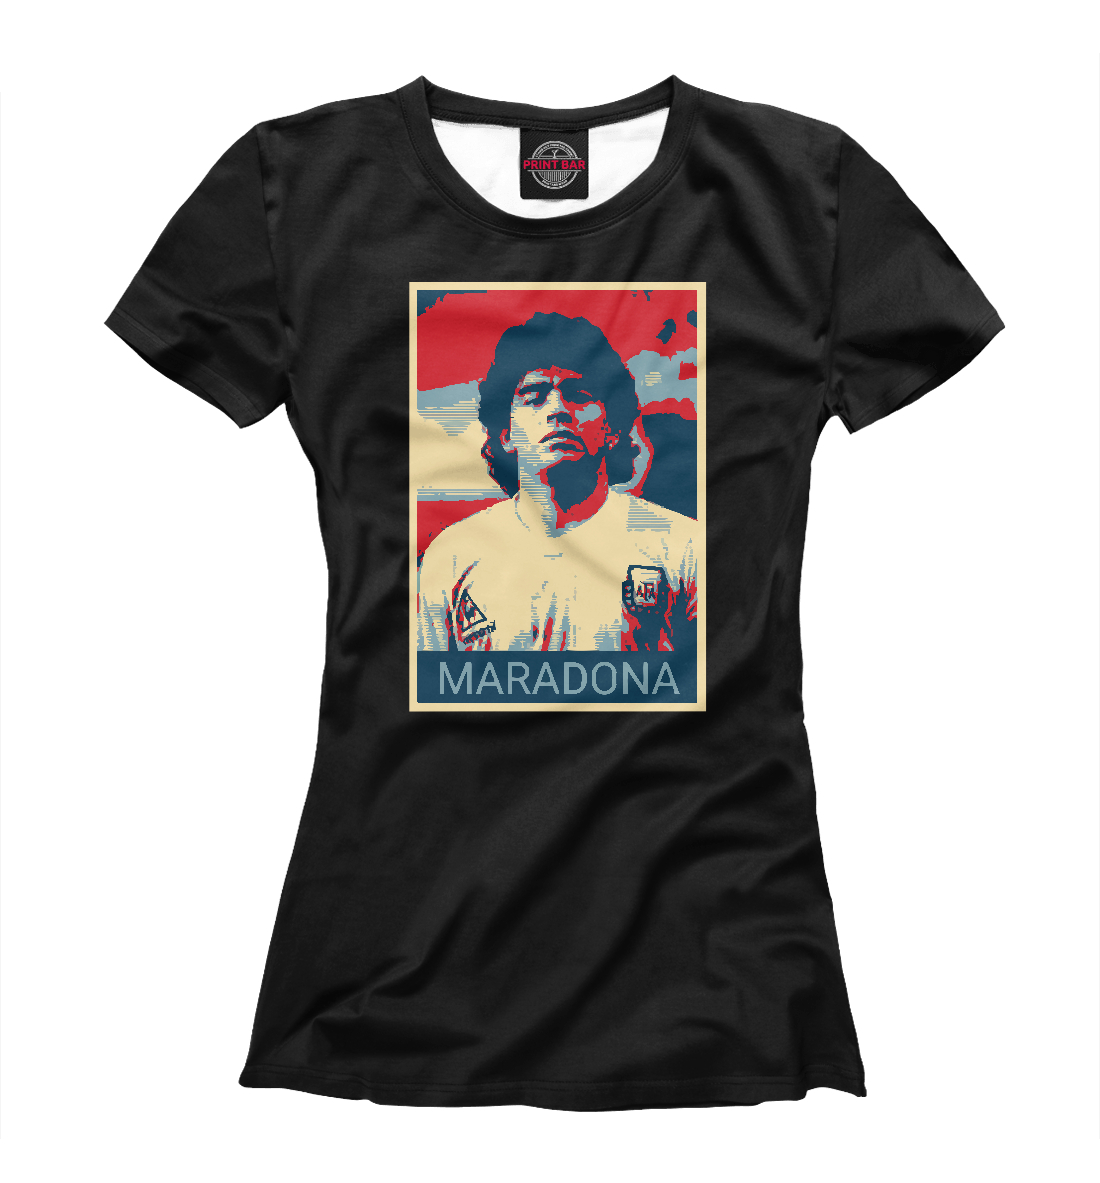 Футболка Maradona для женщин, артикул: FLT-836145-fut-1mp